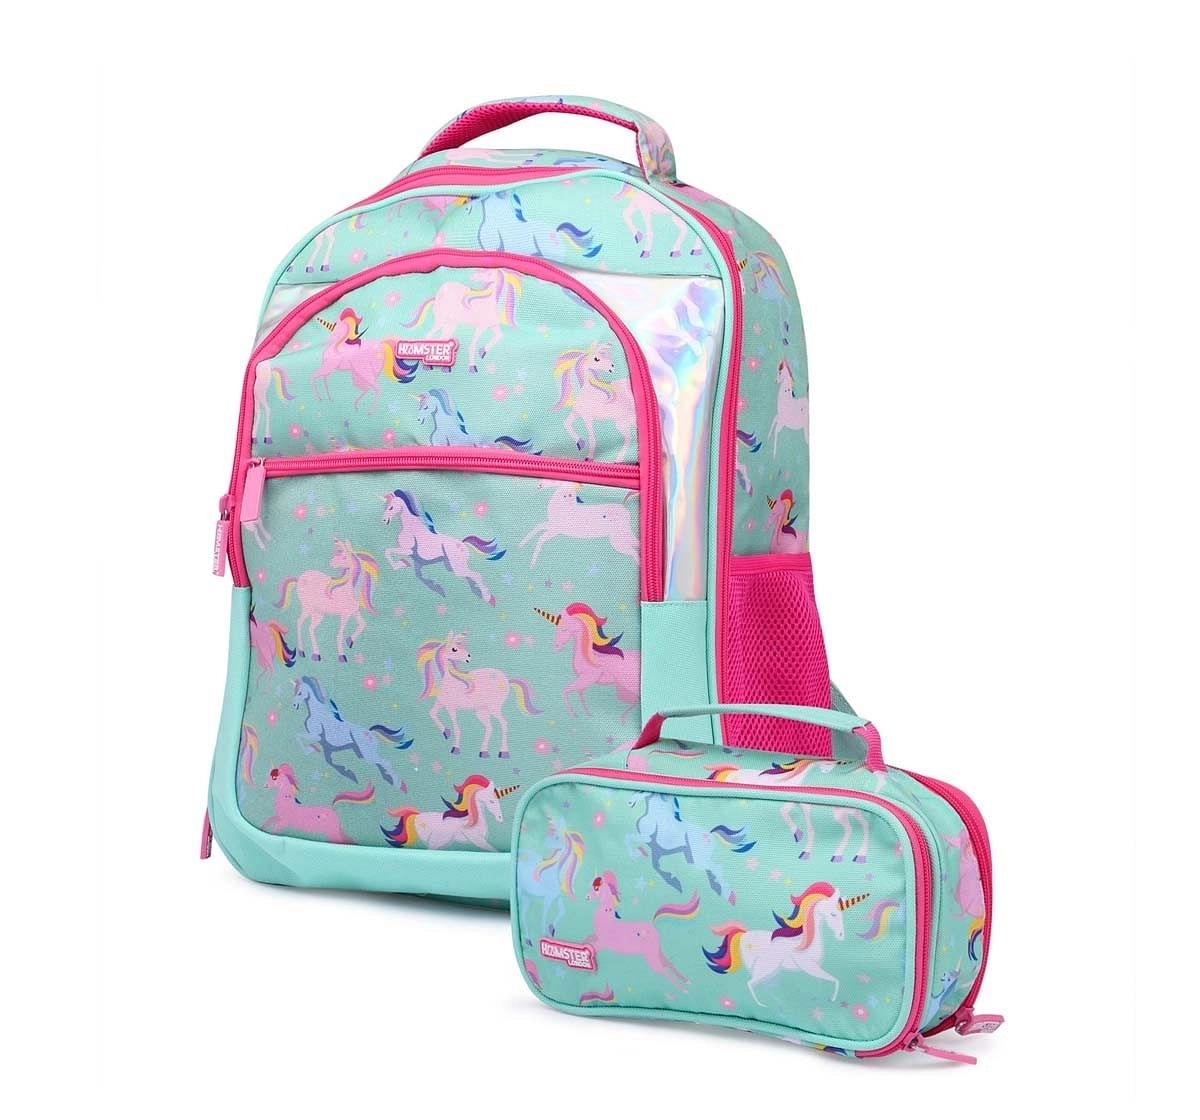 Lf Disney Jasmine Castle Mini Backpack